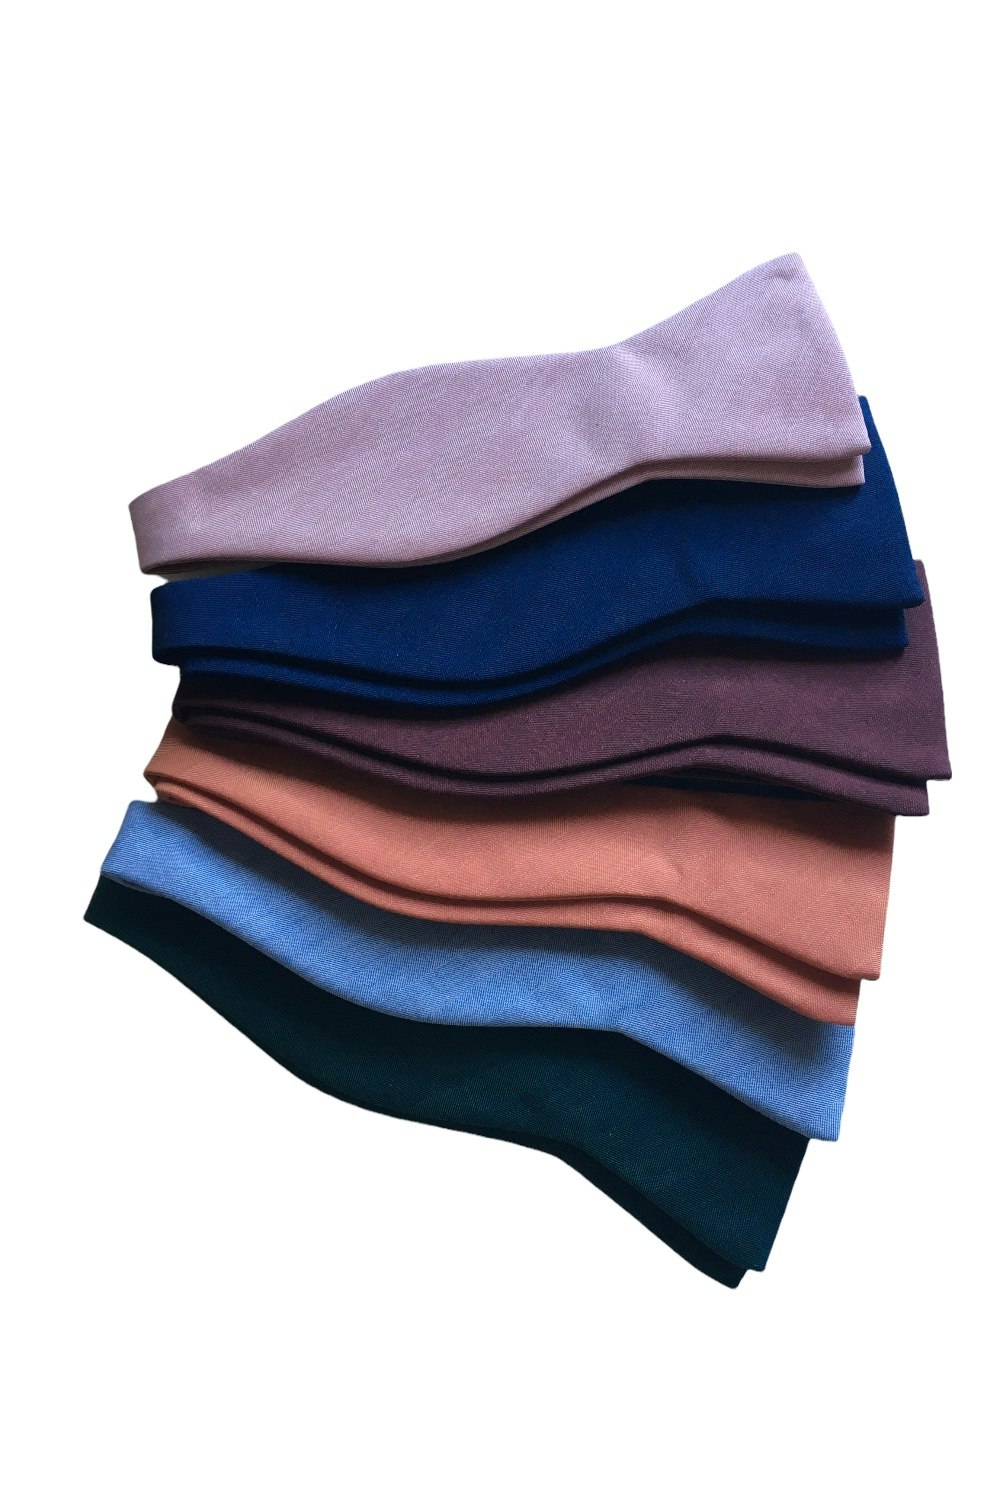 Solaro Cotton/Wool Bow Tie - Dark Green